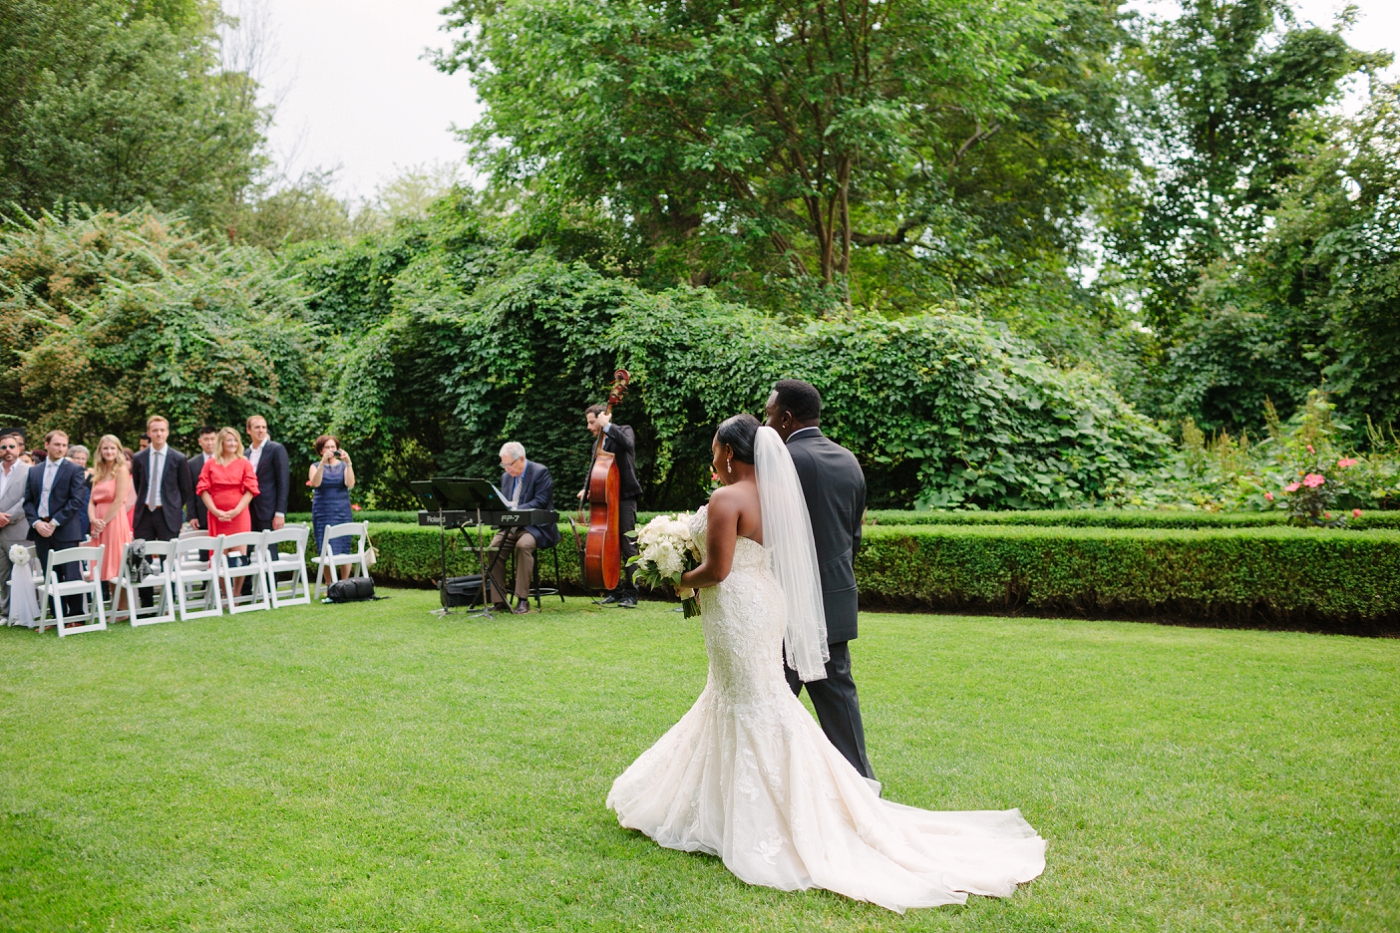 toronto outdoor wedding ceremony venue photos